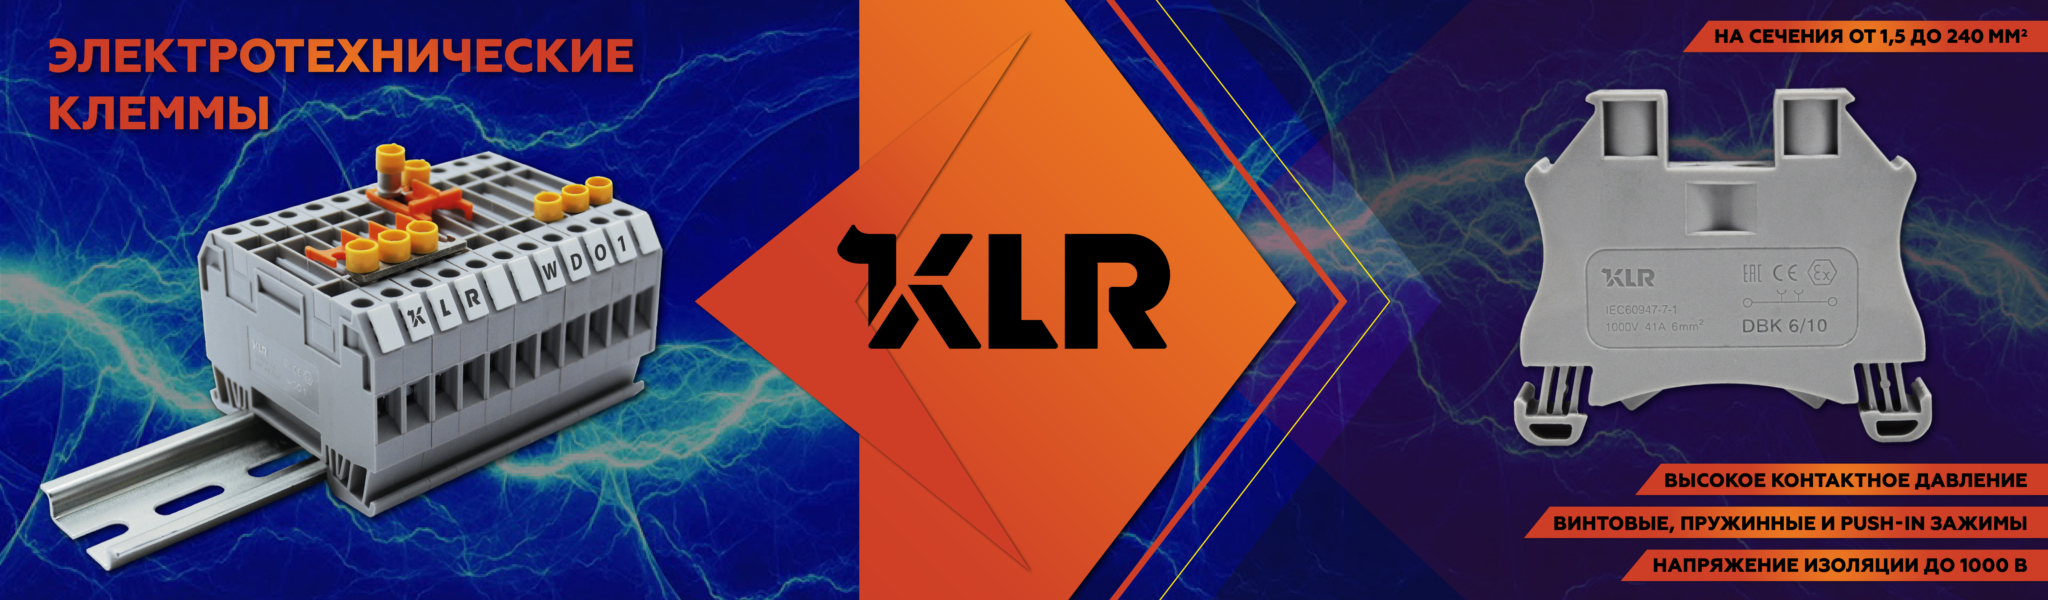 KLR - Электротехнические клеммы